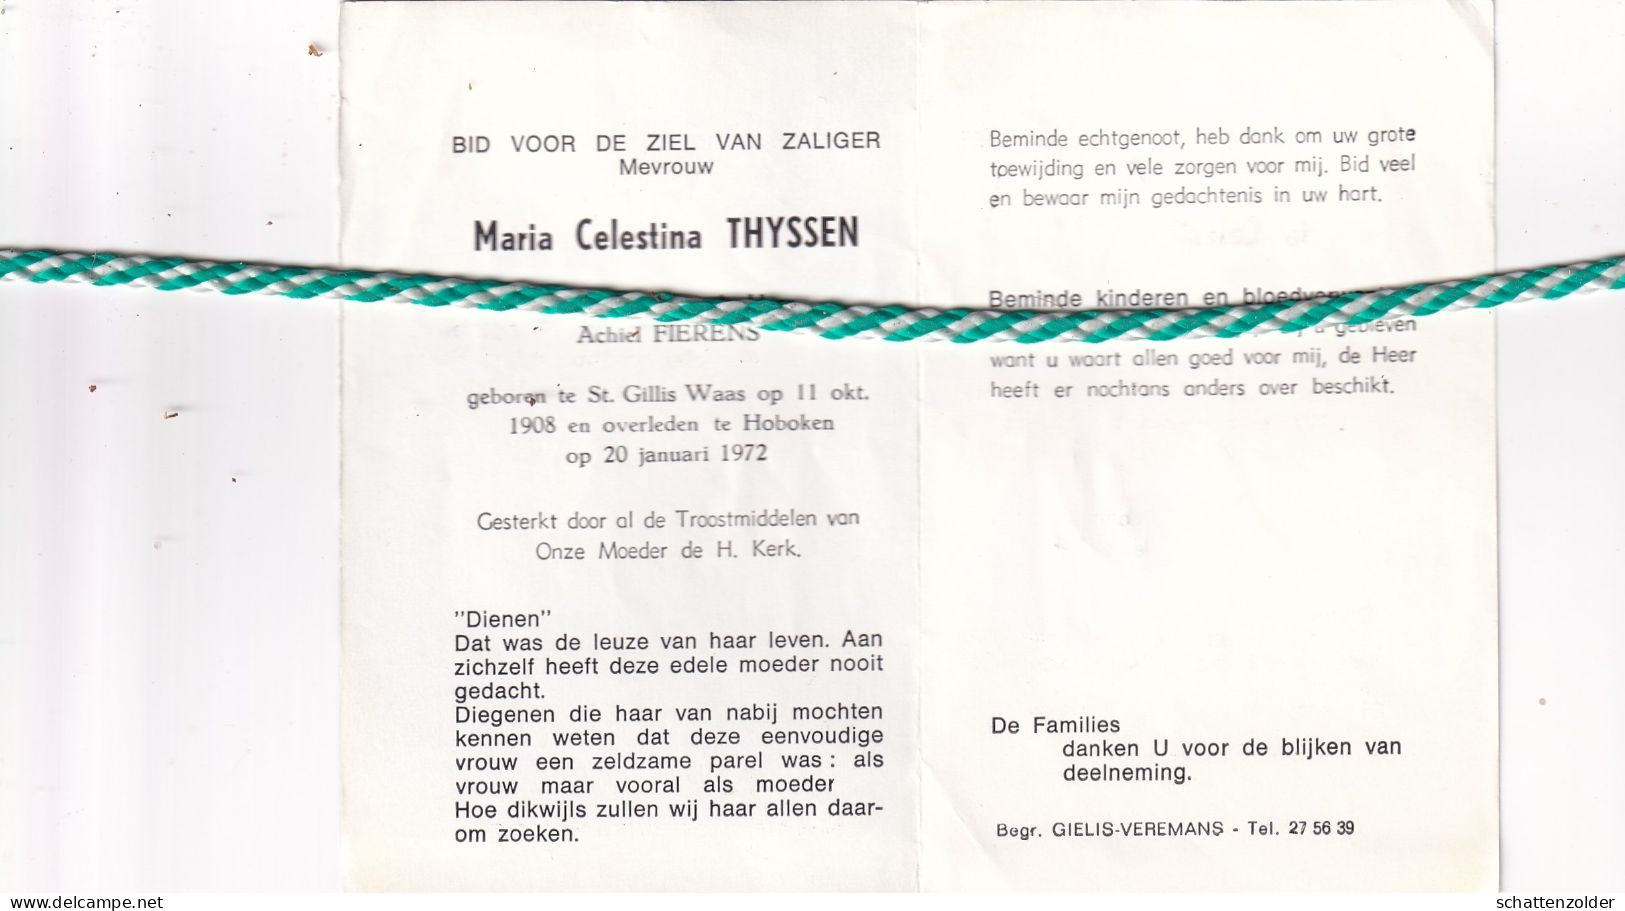 Maria Celestina Thyssen-Fierens, Sint-Gillis-Waas 1908, Hoboken 1972 - Overlijden